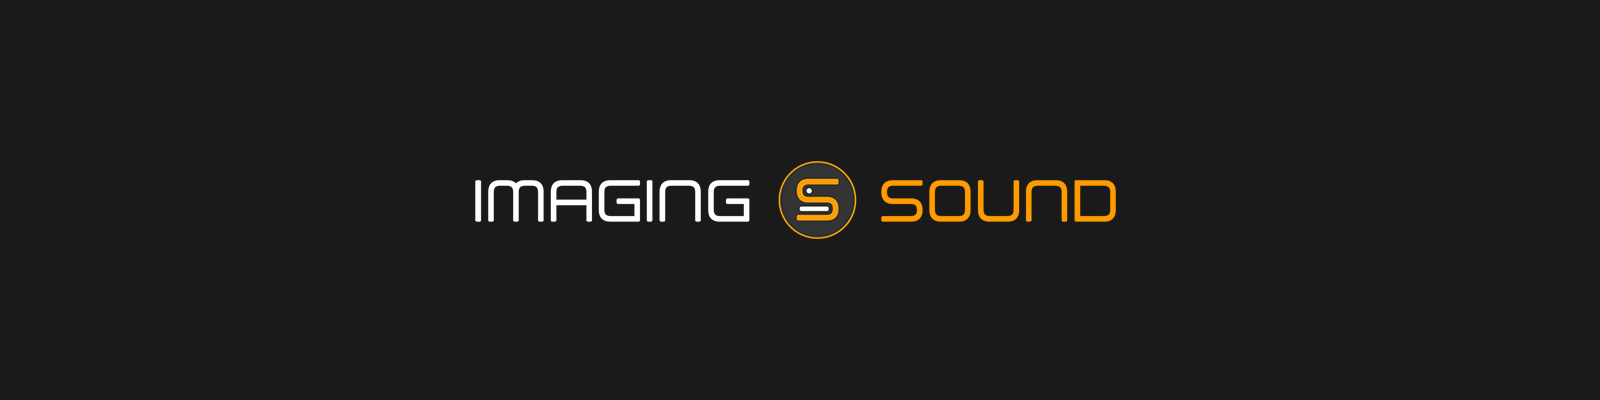 Logo de Imaging Sound